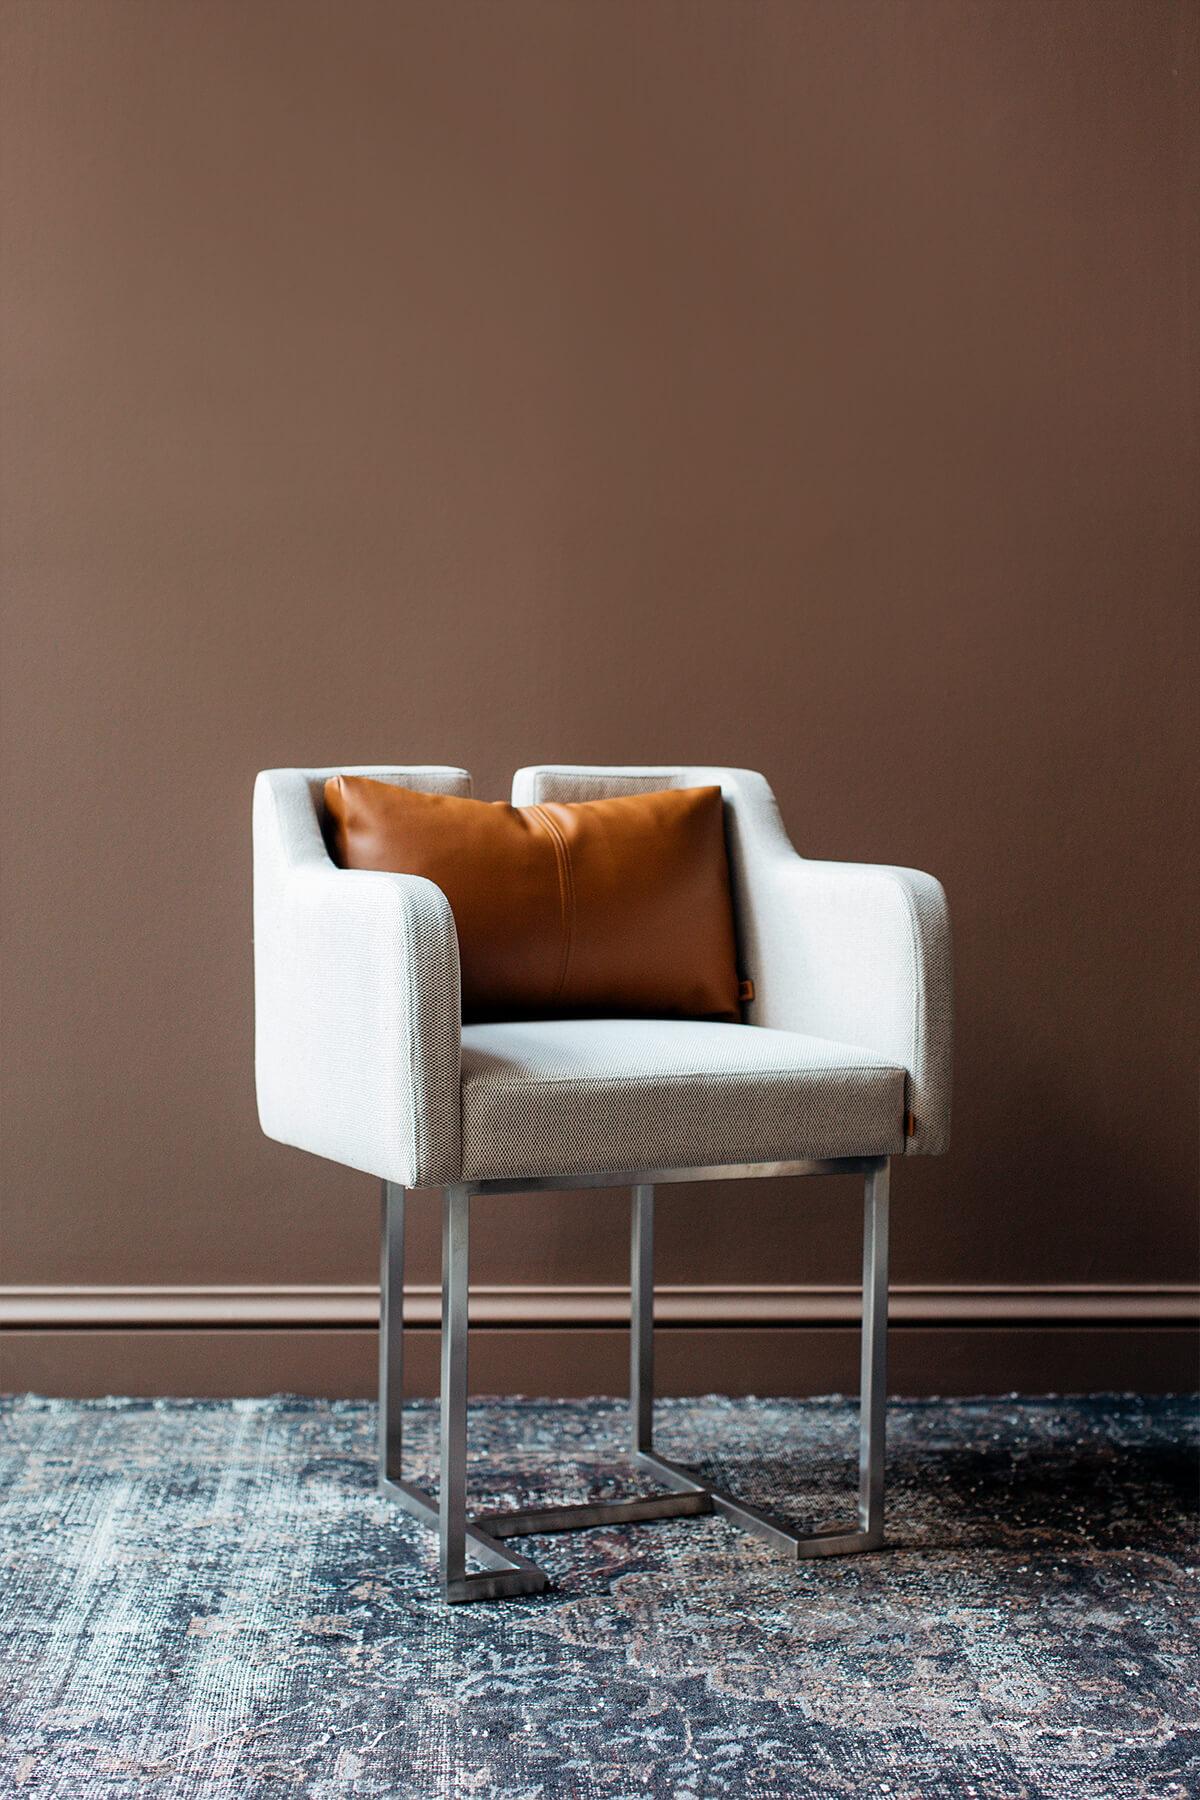 La chaise Papillonne chromée mate s'invite dans votre salon avec ses détails, alliant confort et élégance.

Mesures : longueur : 23,6'' / profondeur : 19,6'' / hauteur : 29,5'' / hauteur du siège : 19,6''
Poids : 12,4 kg
Matériaux : chrome